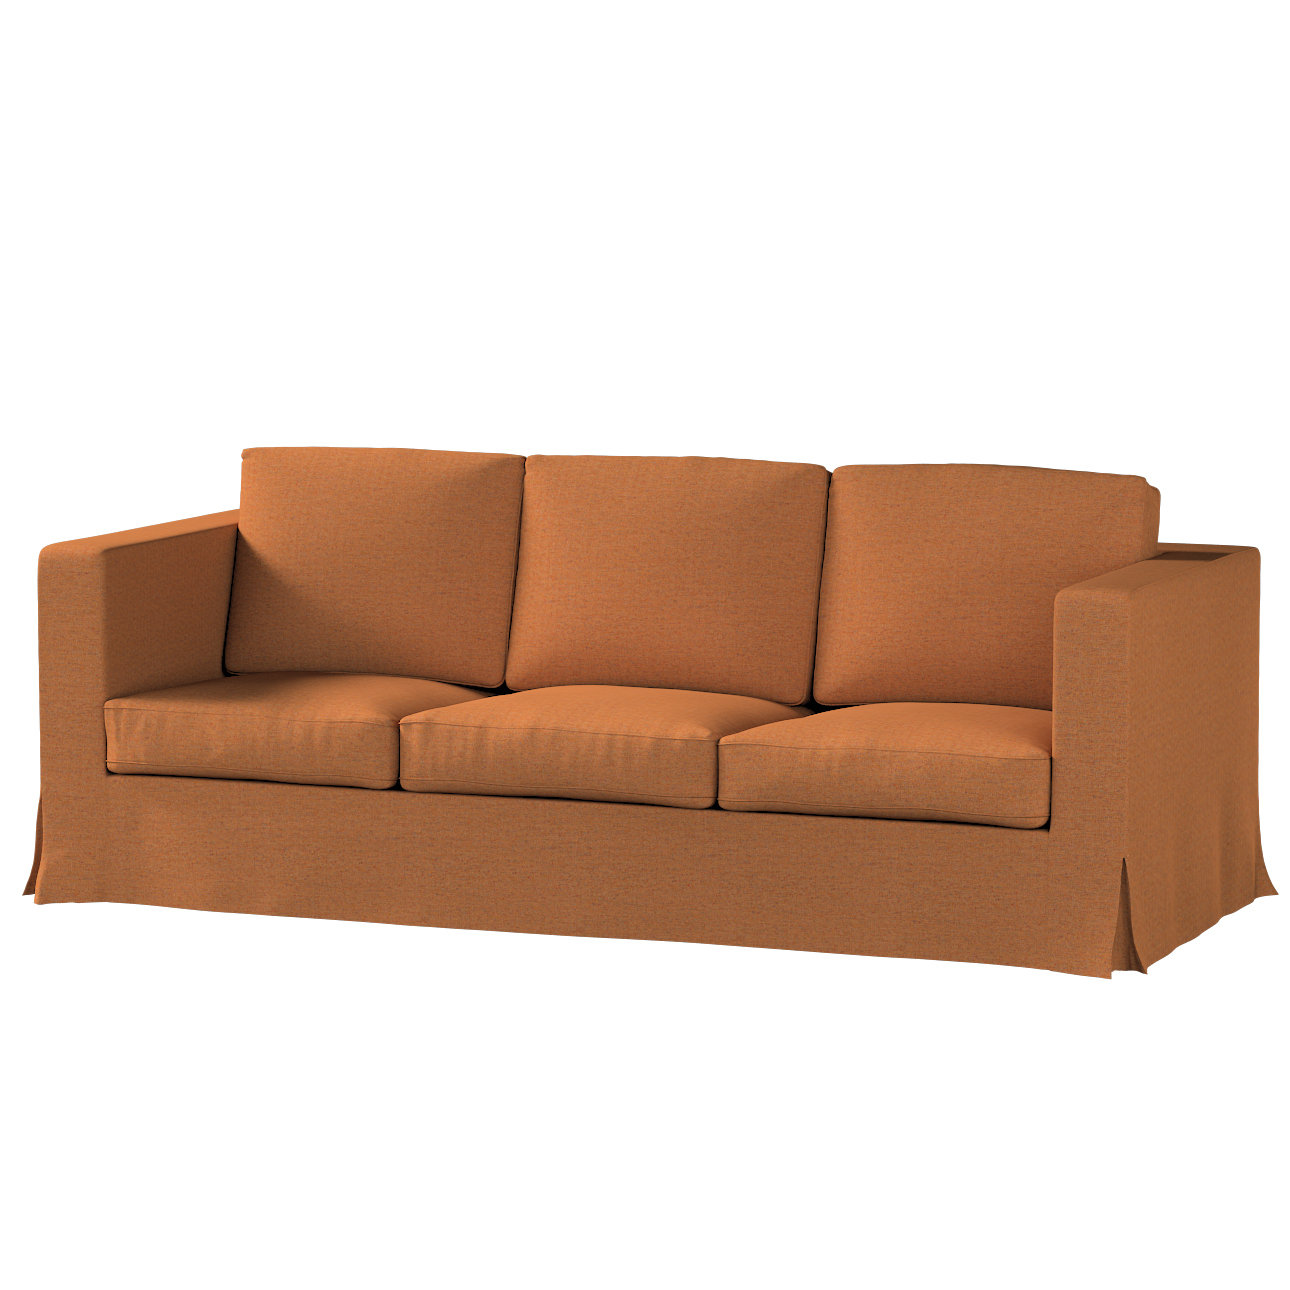 Bezug für Karlanda 3-Sitzer Sofa nicht ausklappbar, lang, orange, Bezug für günstig online kaufen